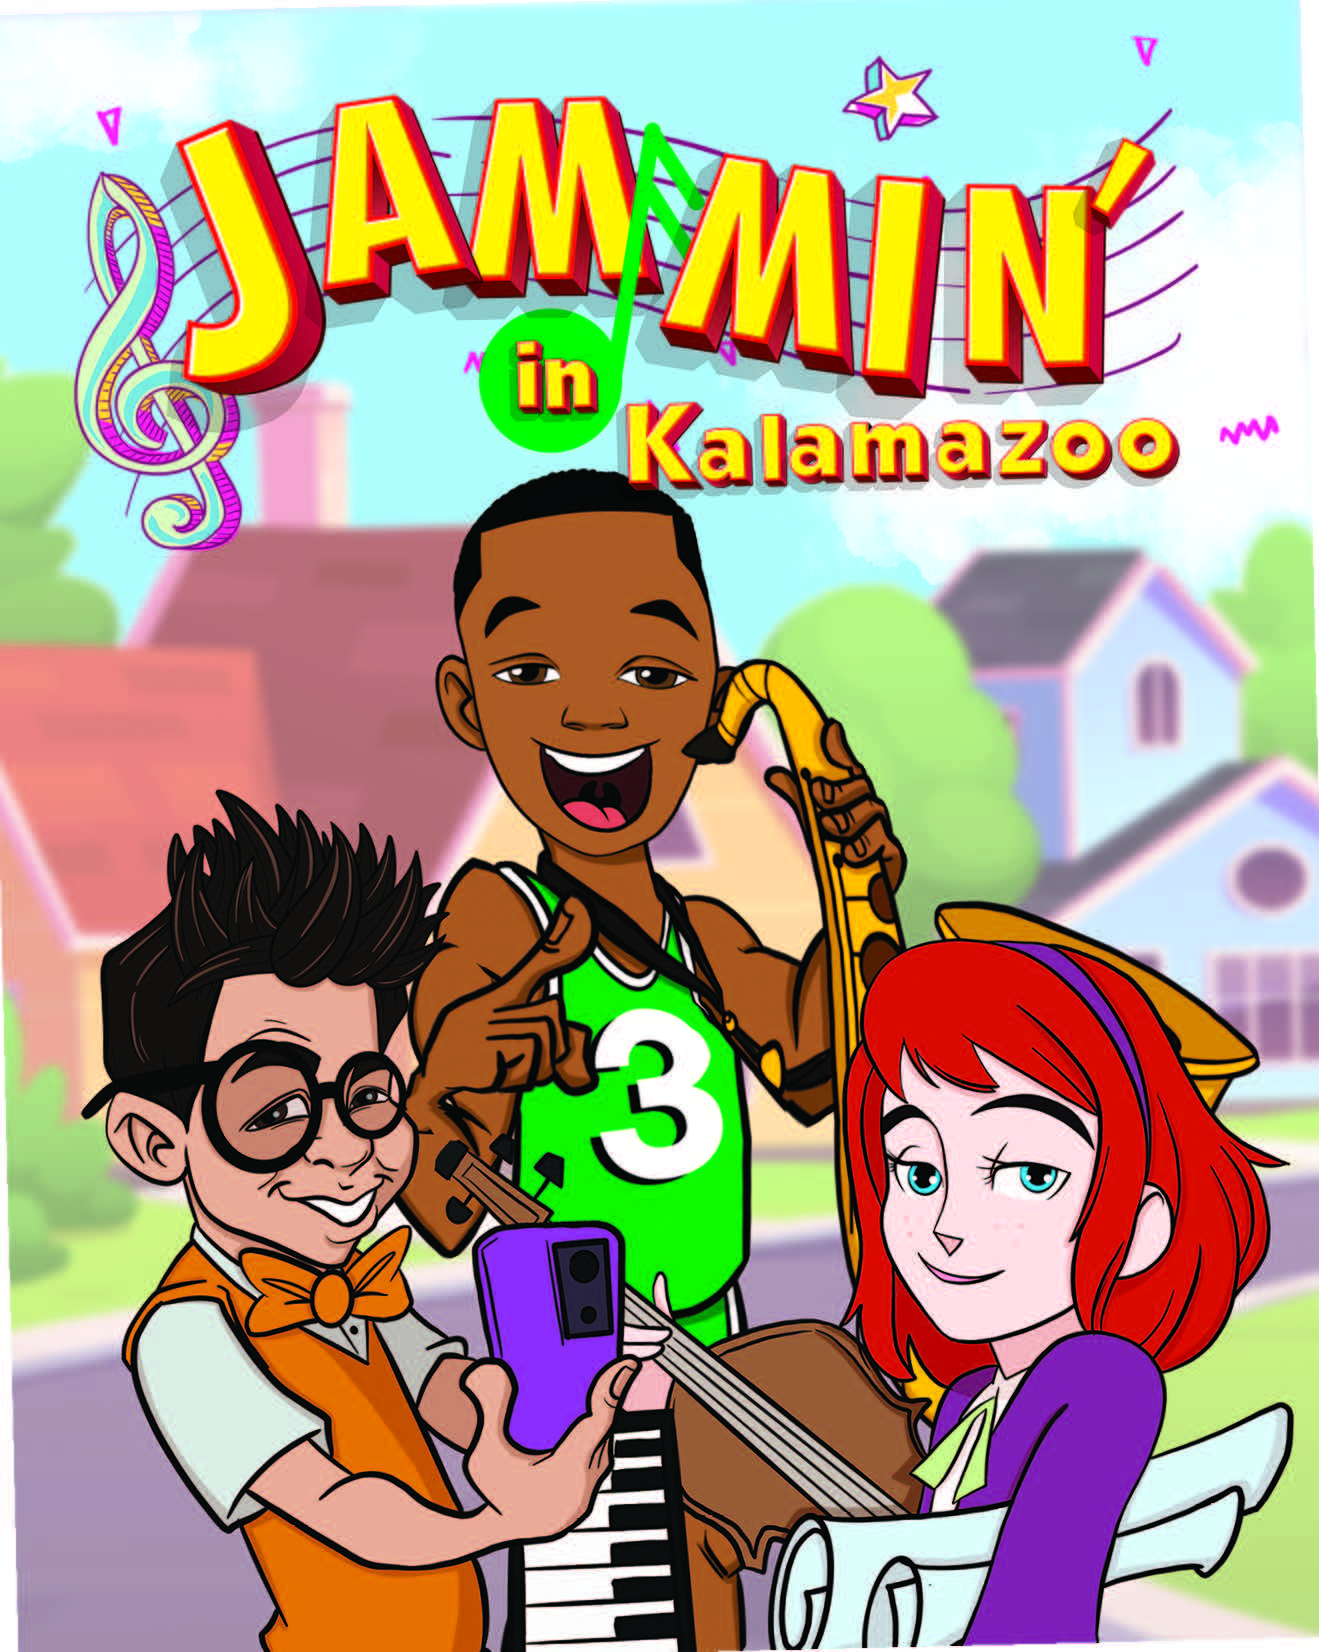 Jammin' in Kalamazoo